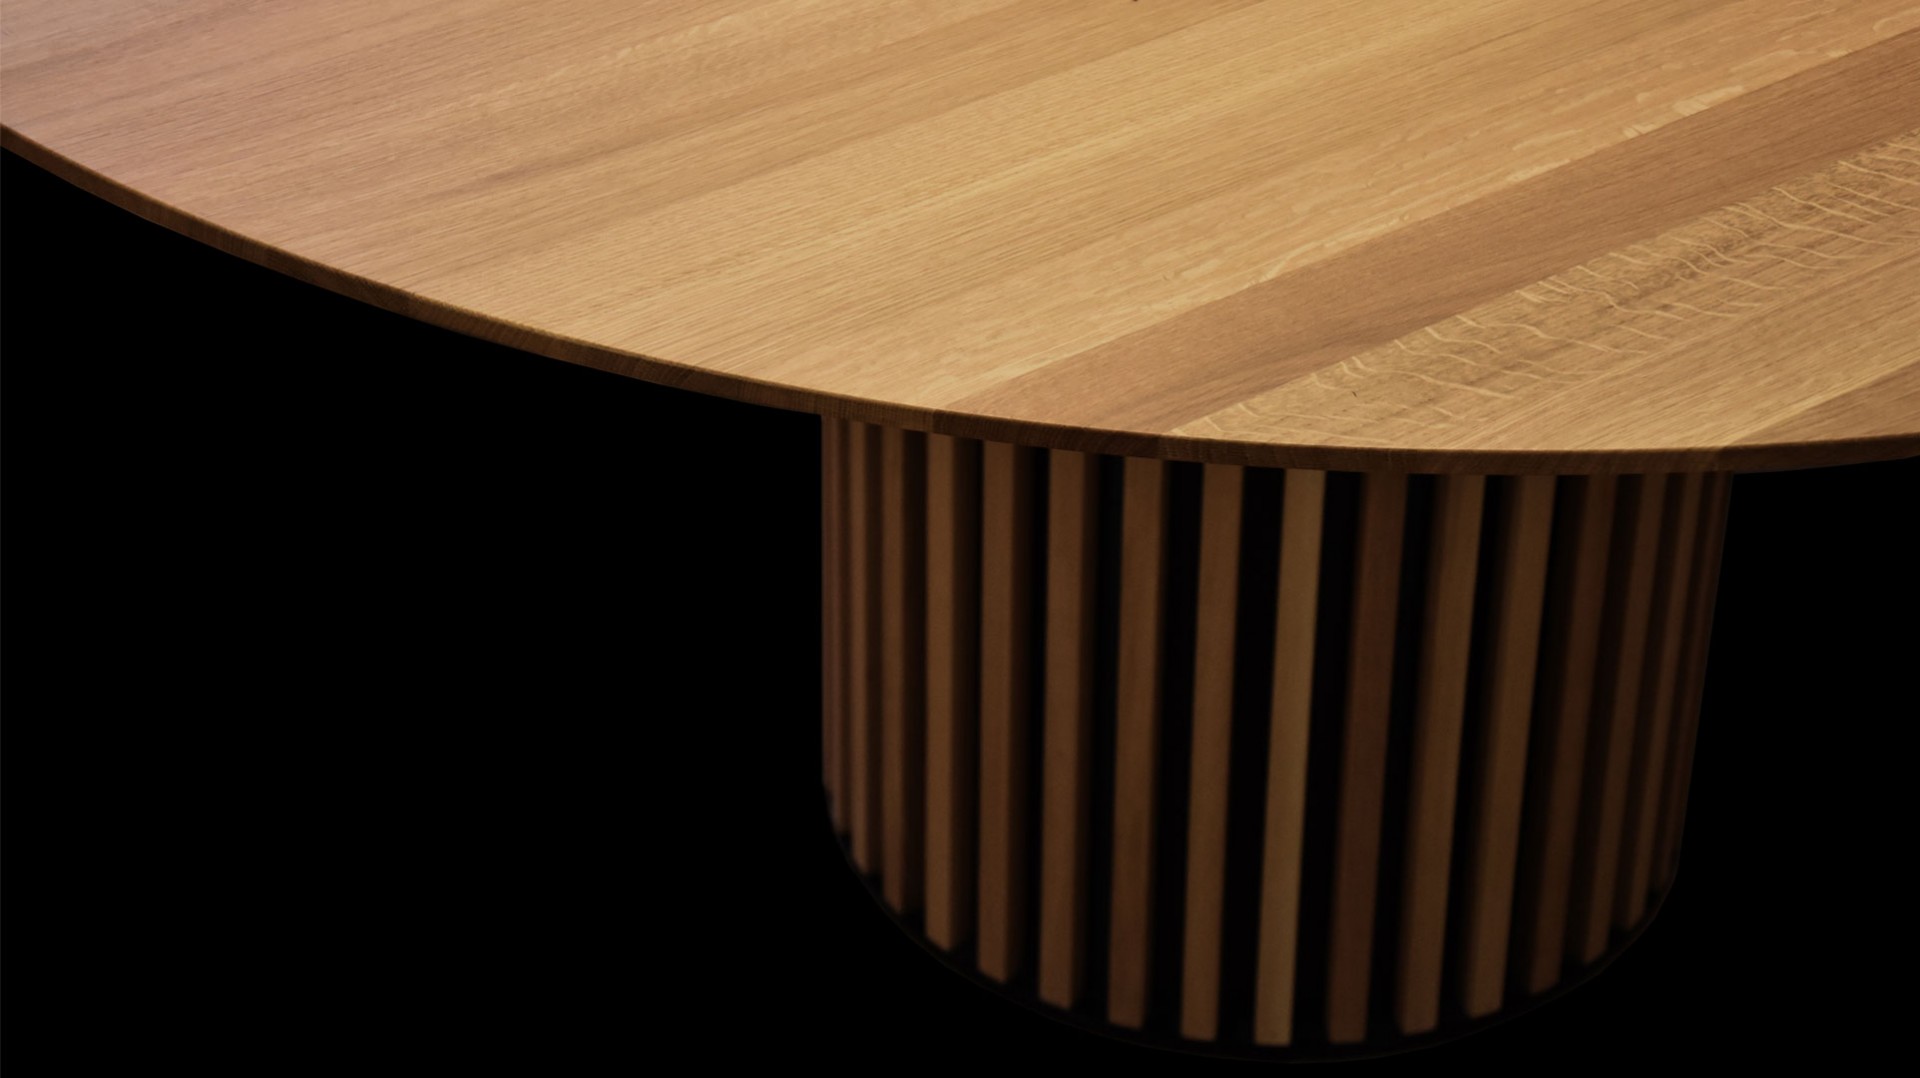 okrúhly jedálenský stôl TAP W z masívneho dubového dreva, dubový okrúhly stôl, masívny okrúhly stôl, okrúhly stôl z masívneho dubového dreva, okrúhly stôl TAP W cubica